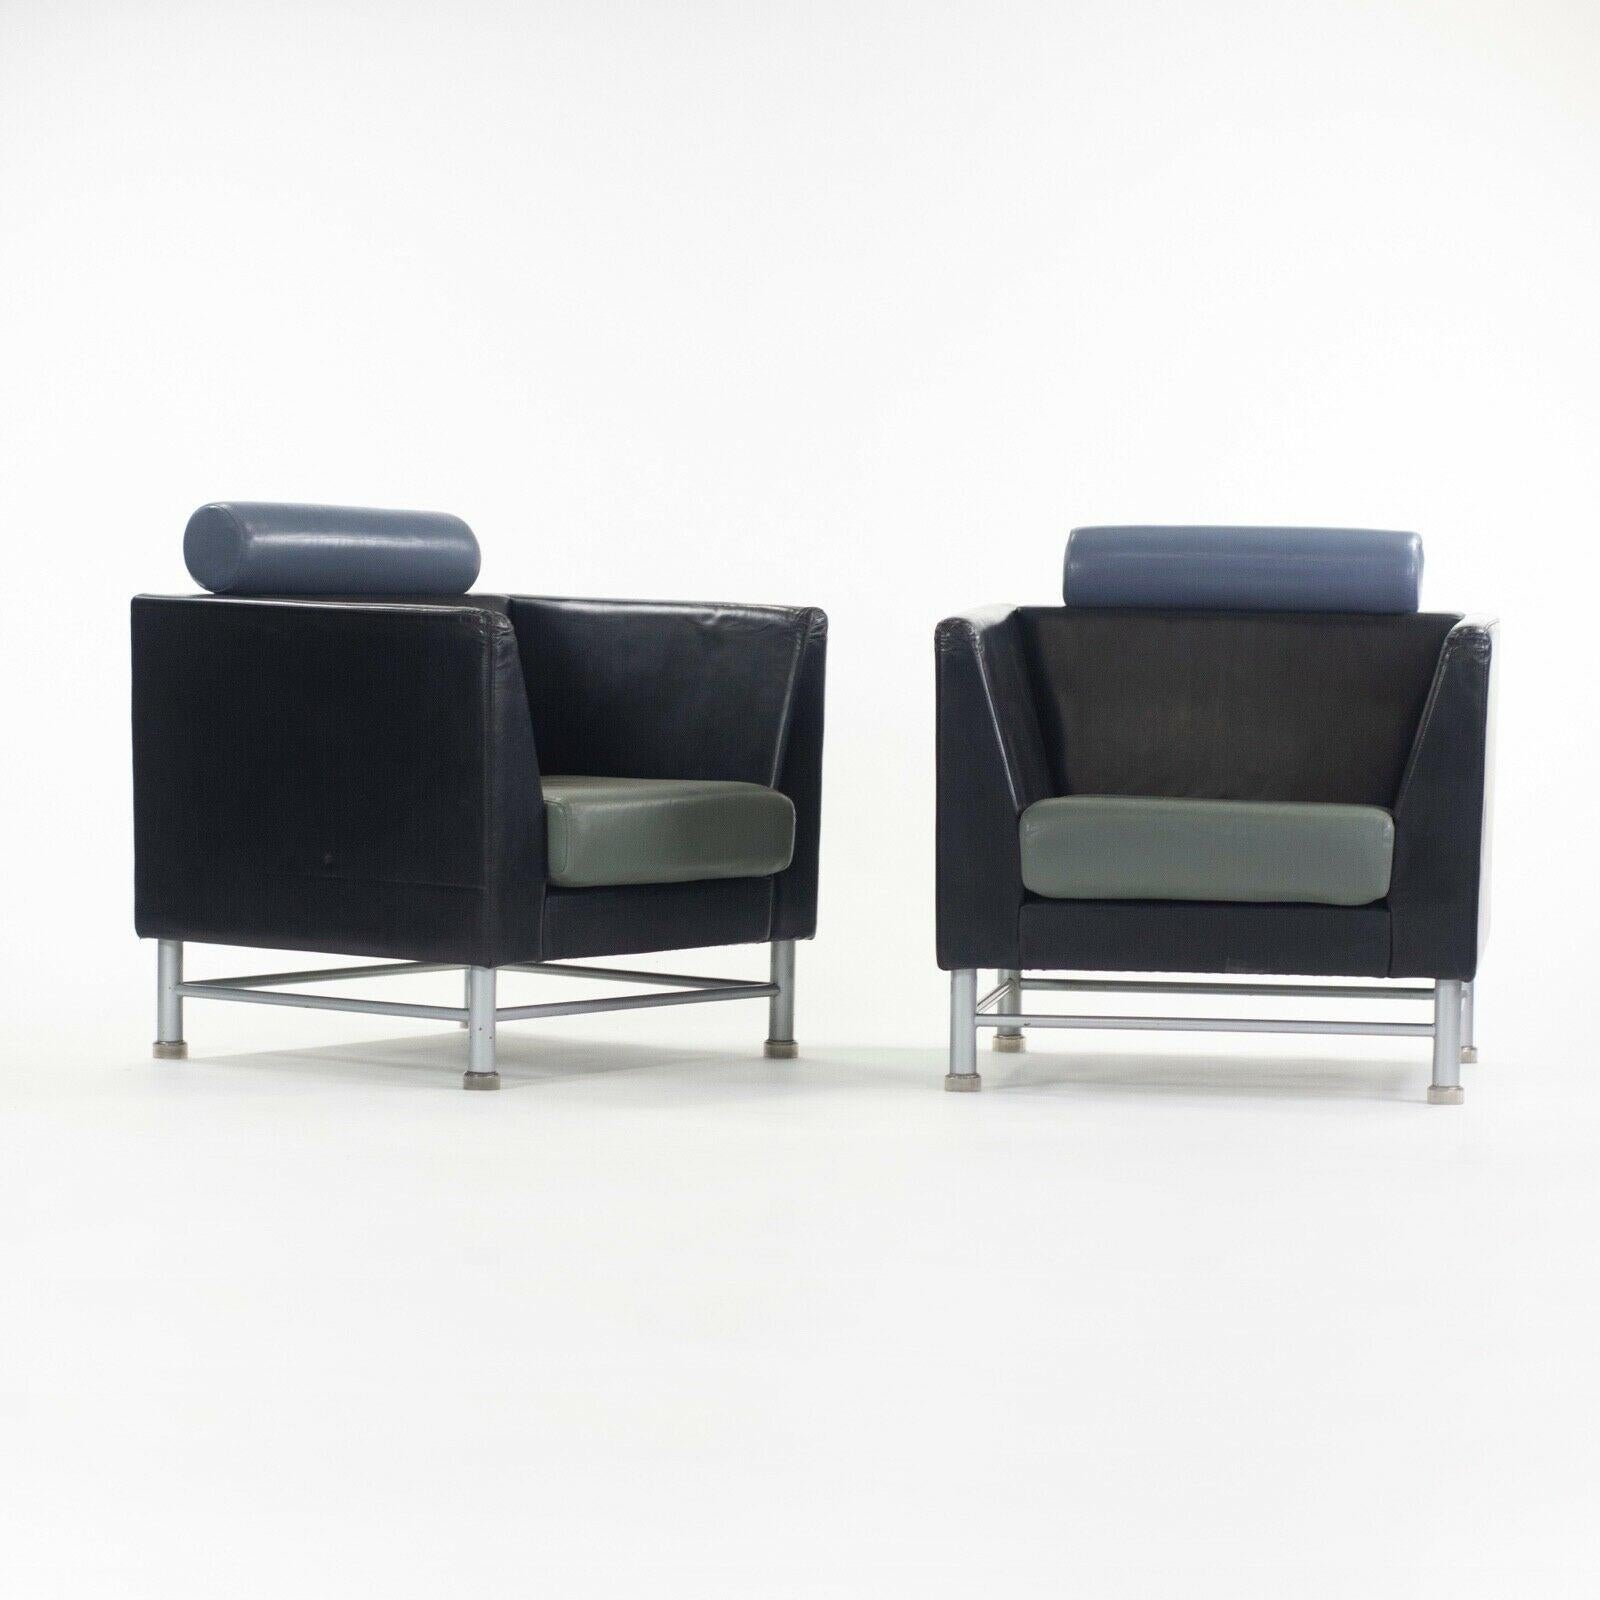 Zum Verkauf steht ein Paar wunderschöner und originaler Ettore Sottsass Eastside Lounge Chairs, hergestellt von Knoll International. Diese beiden Lounge-Sessel stammen aus der American Airlines Executive Lounge am Flughafen Chicago O'Hare. Sie